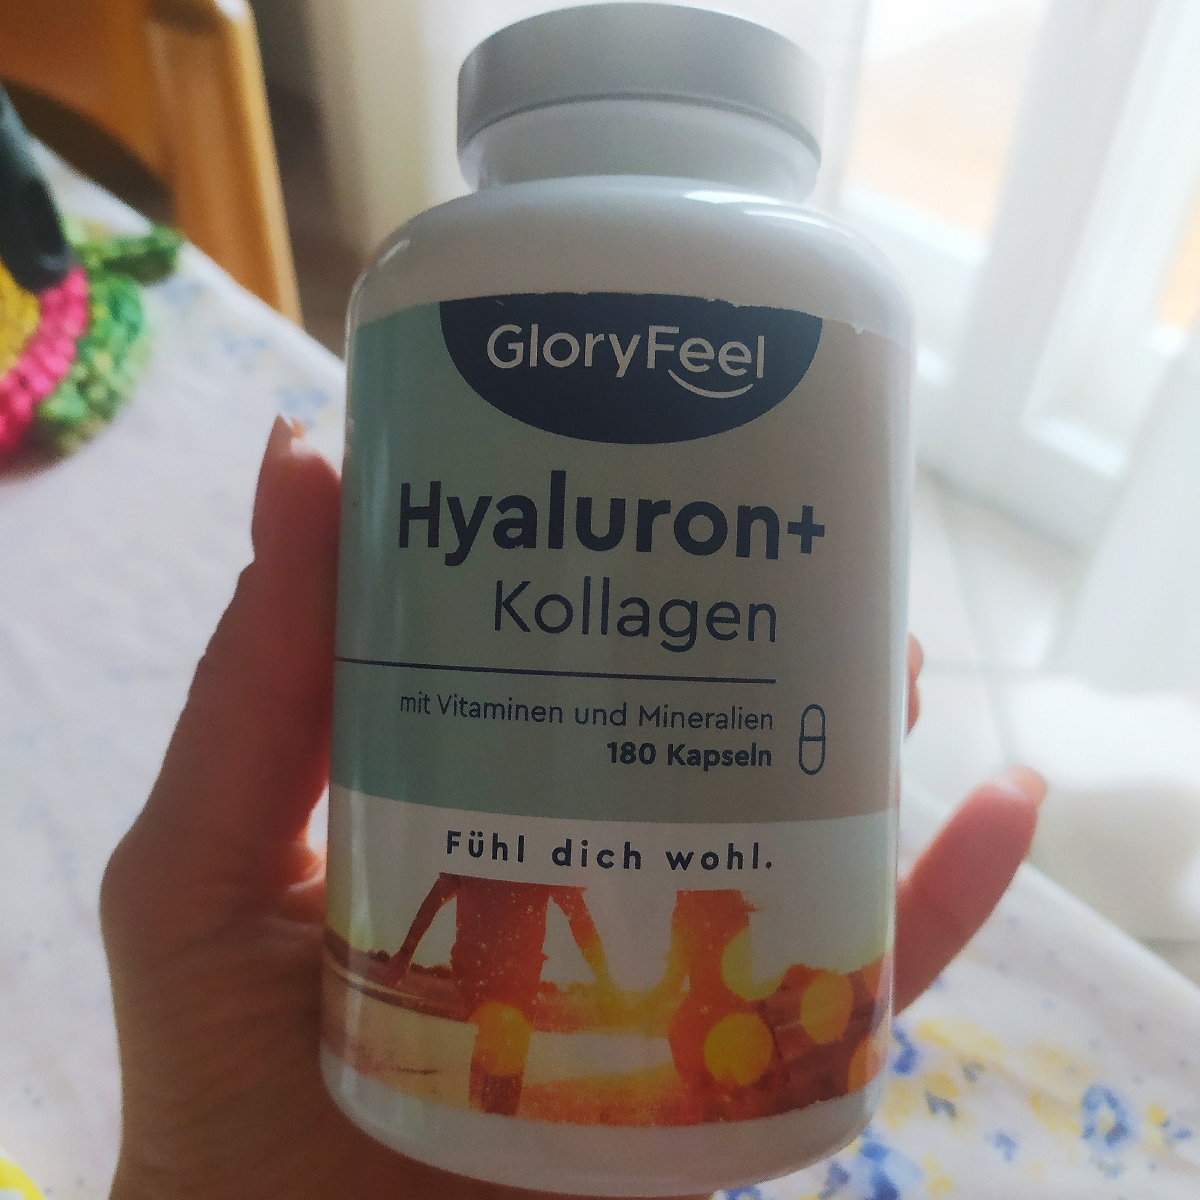 Glory feel Hyaluron+Kollagen Reviews | abillion